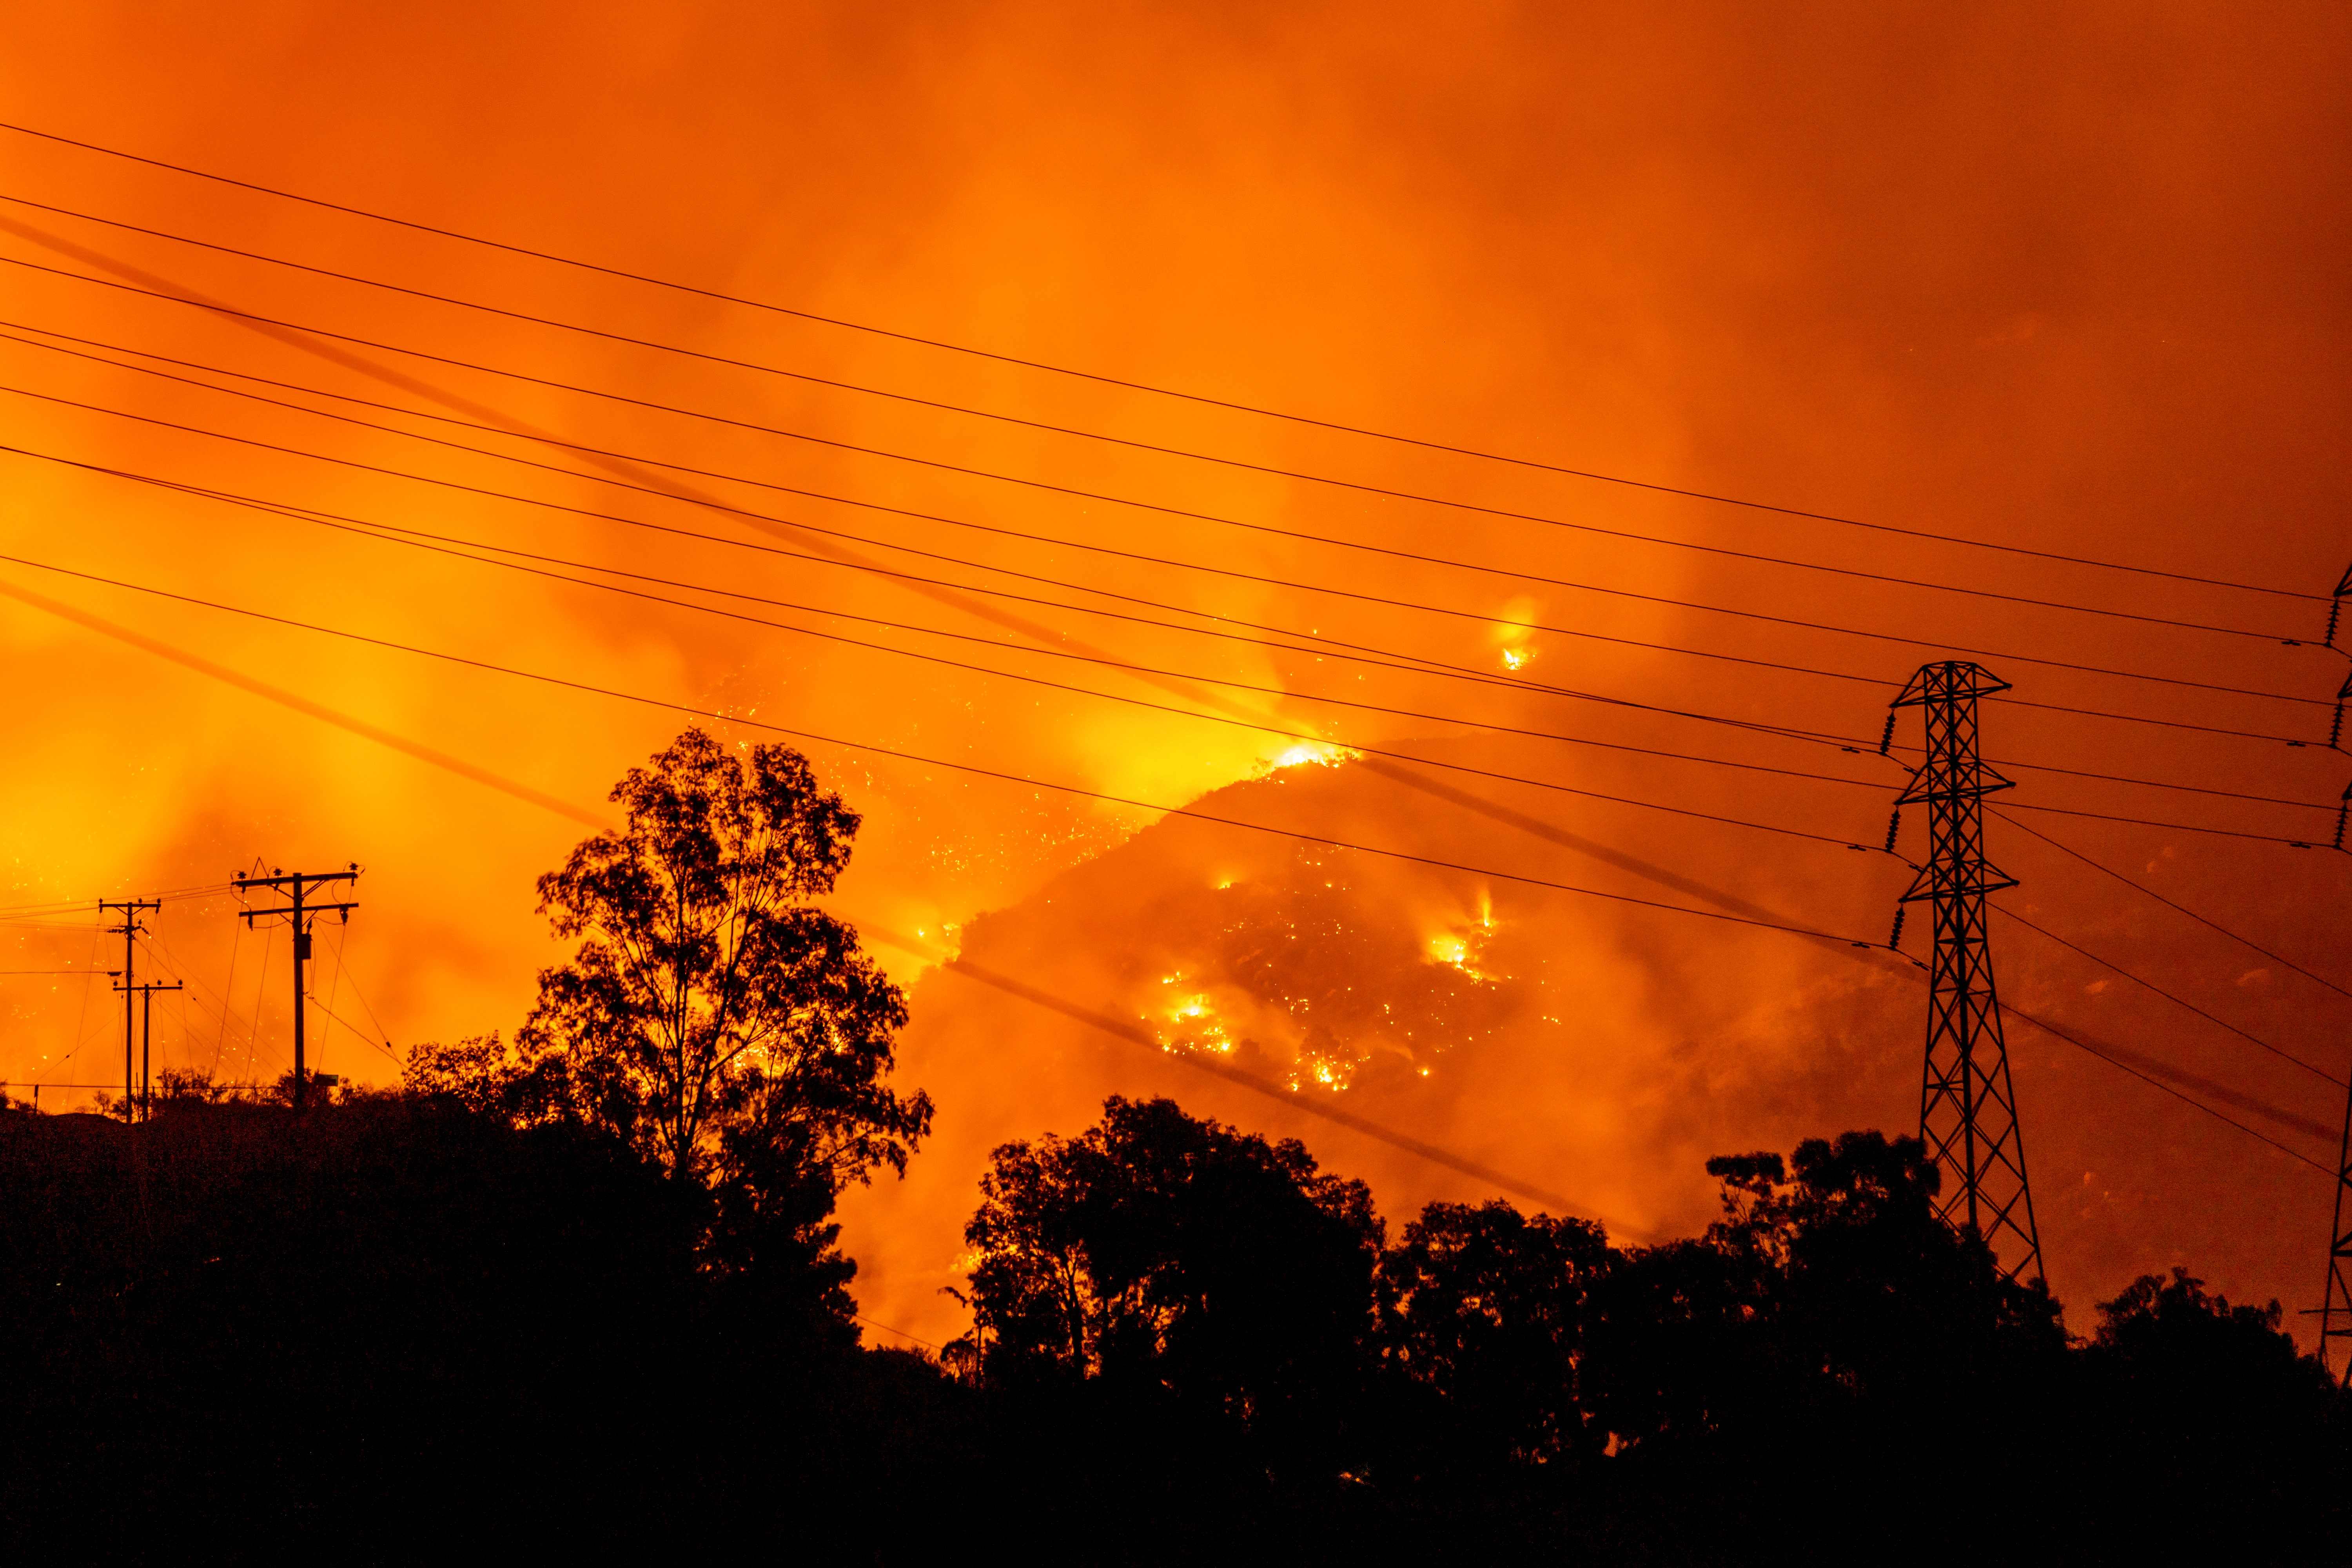 El incendio quema varias casas en Santa Bárbara, California. (Foto Prensa Libre: AFP)